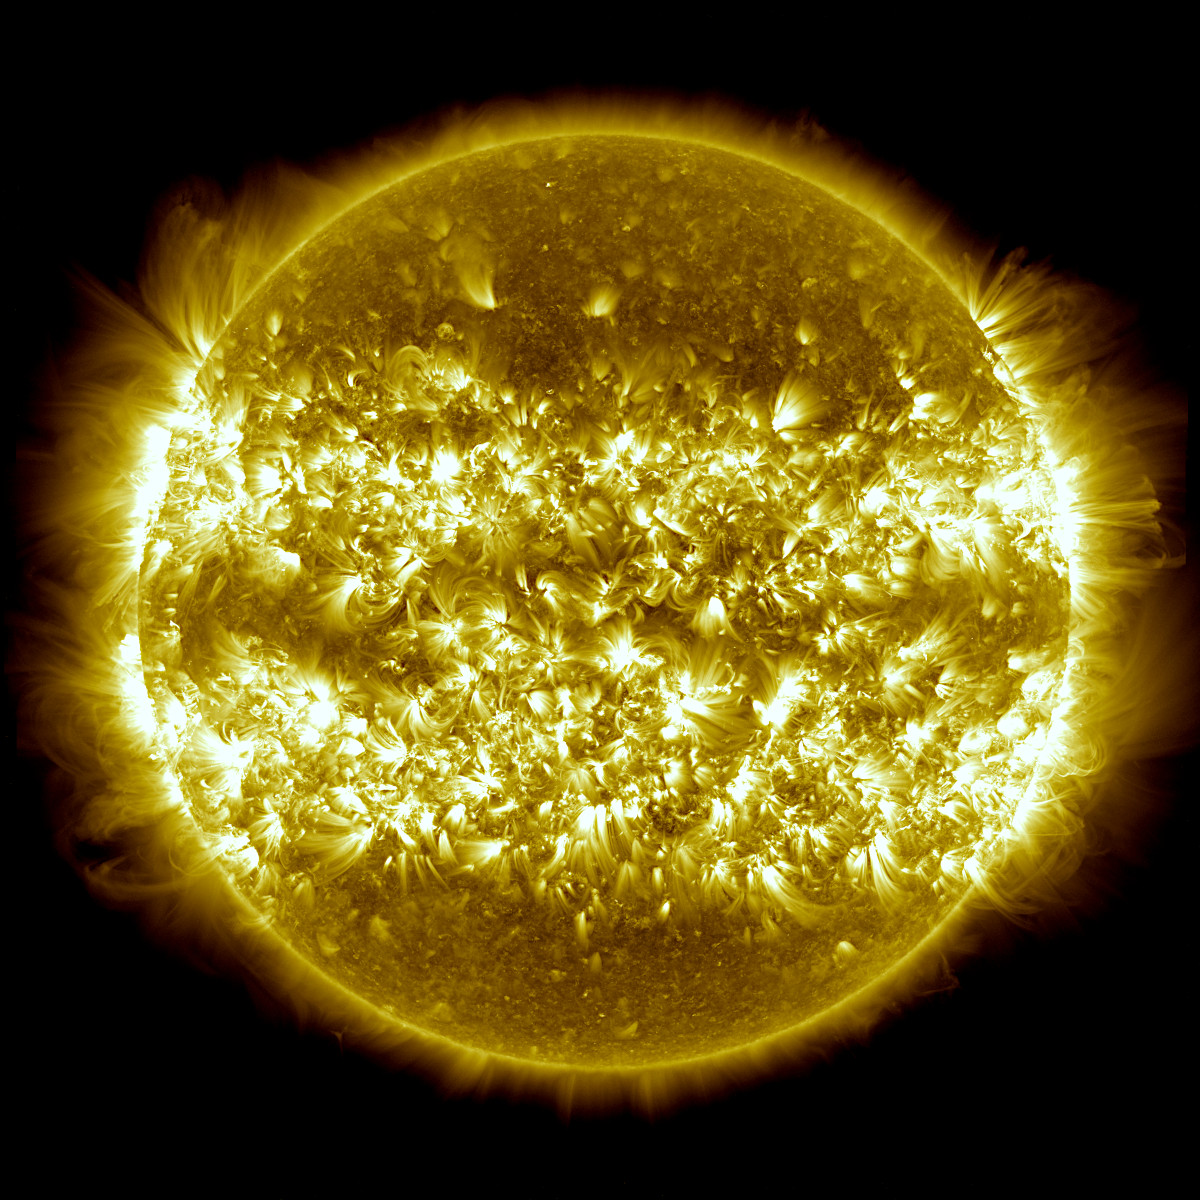 太陽観測衛星SDOがとらえた太陽 〜 約60万度の領域を示した25枚の合成